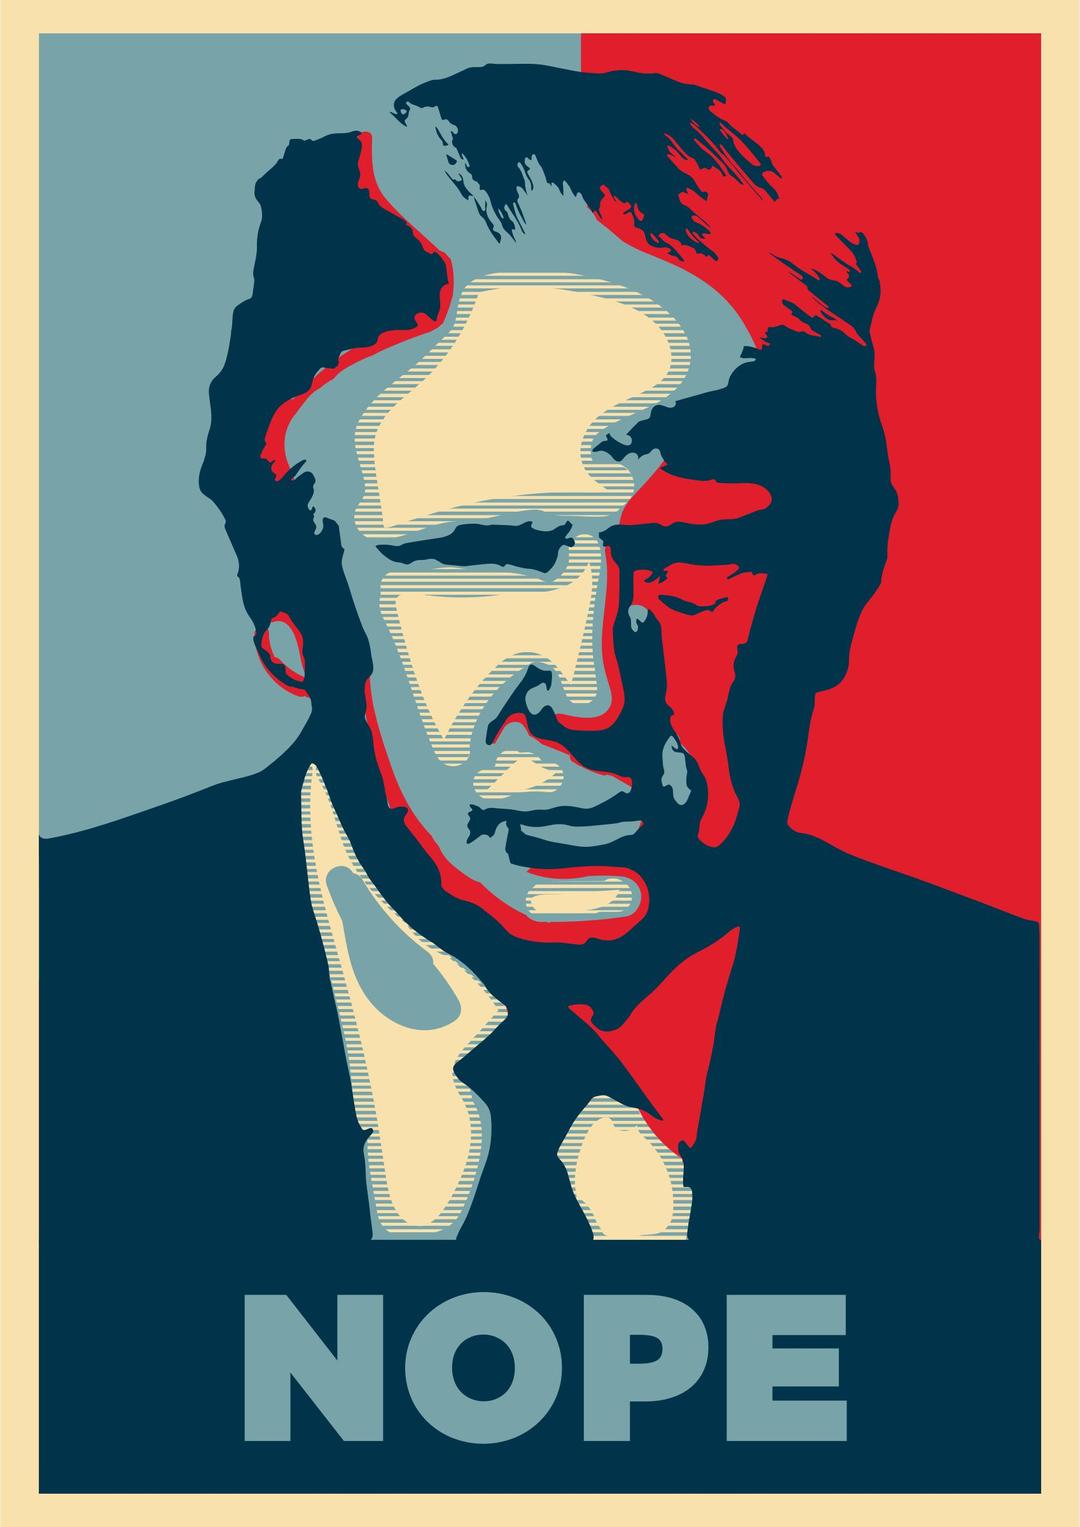 Donald Trump Nope Poster png transparent